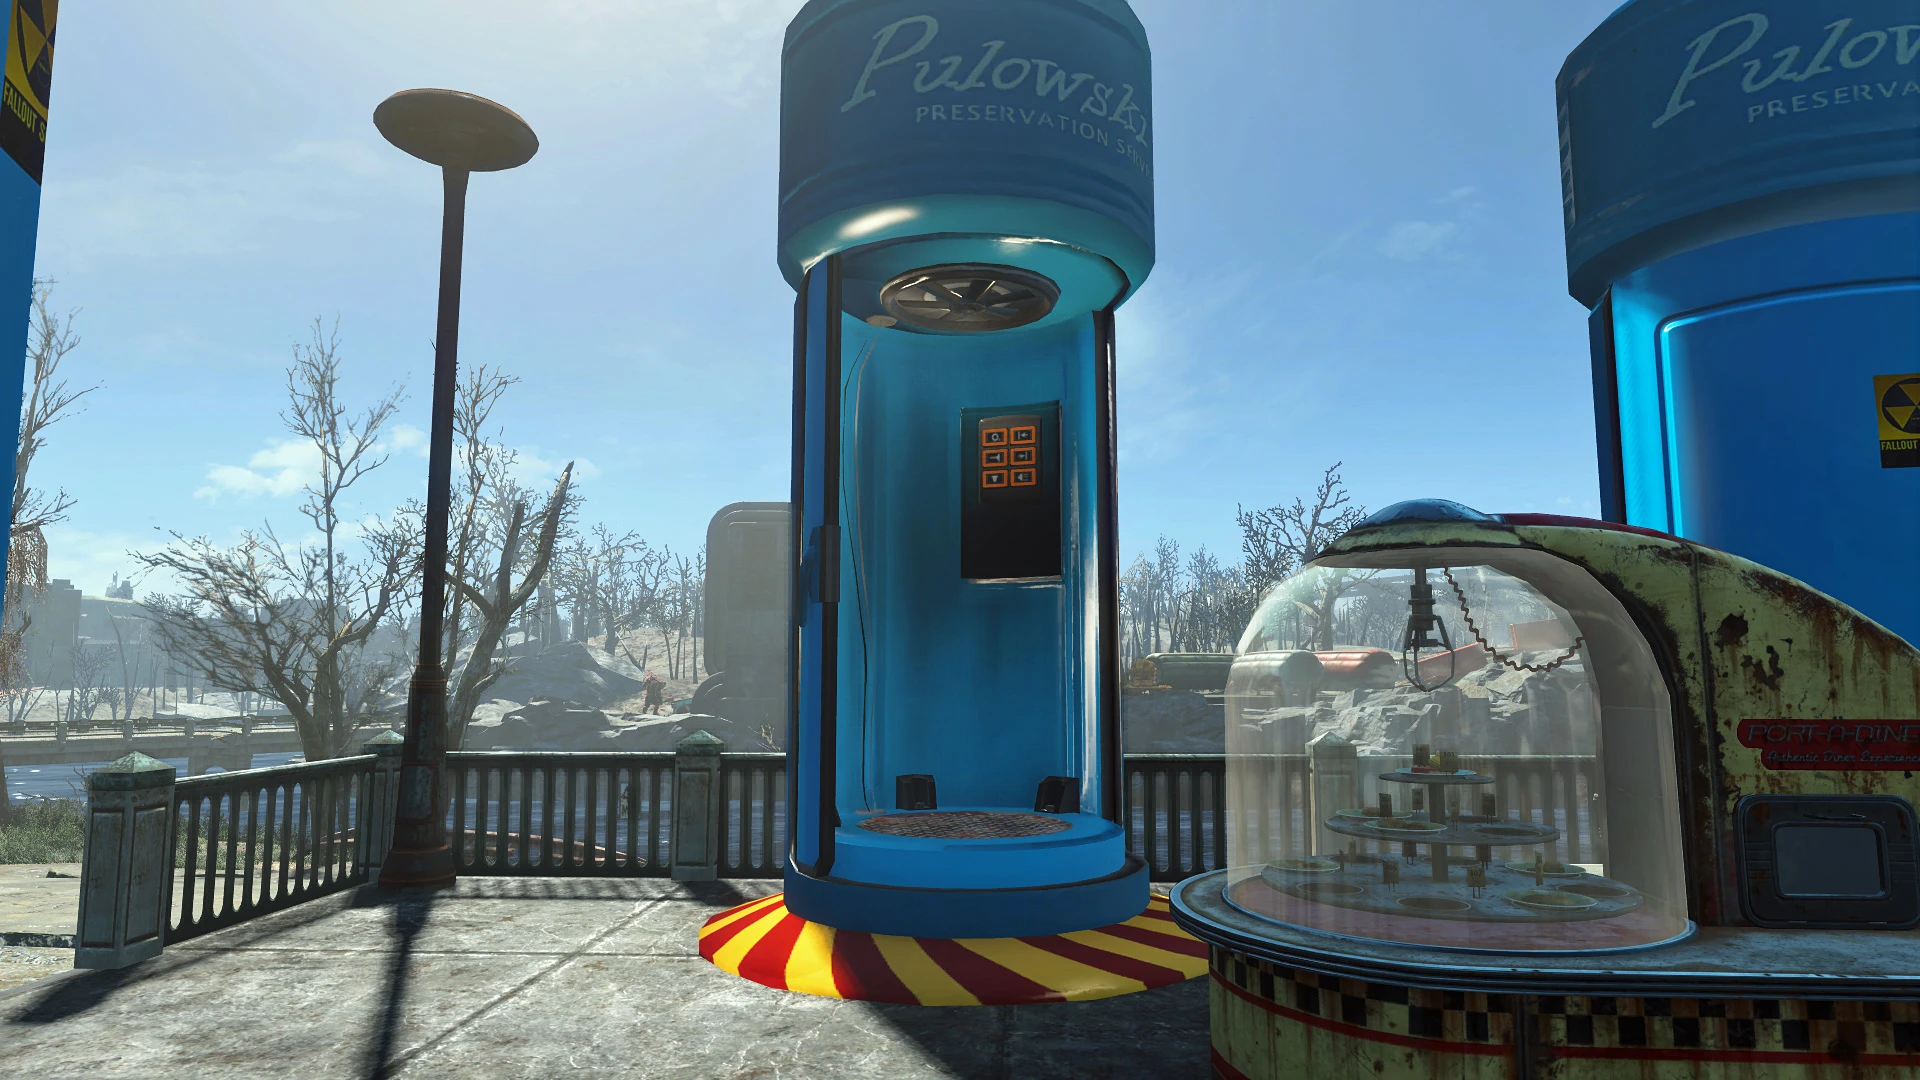 fallout shelter xxx mods